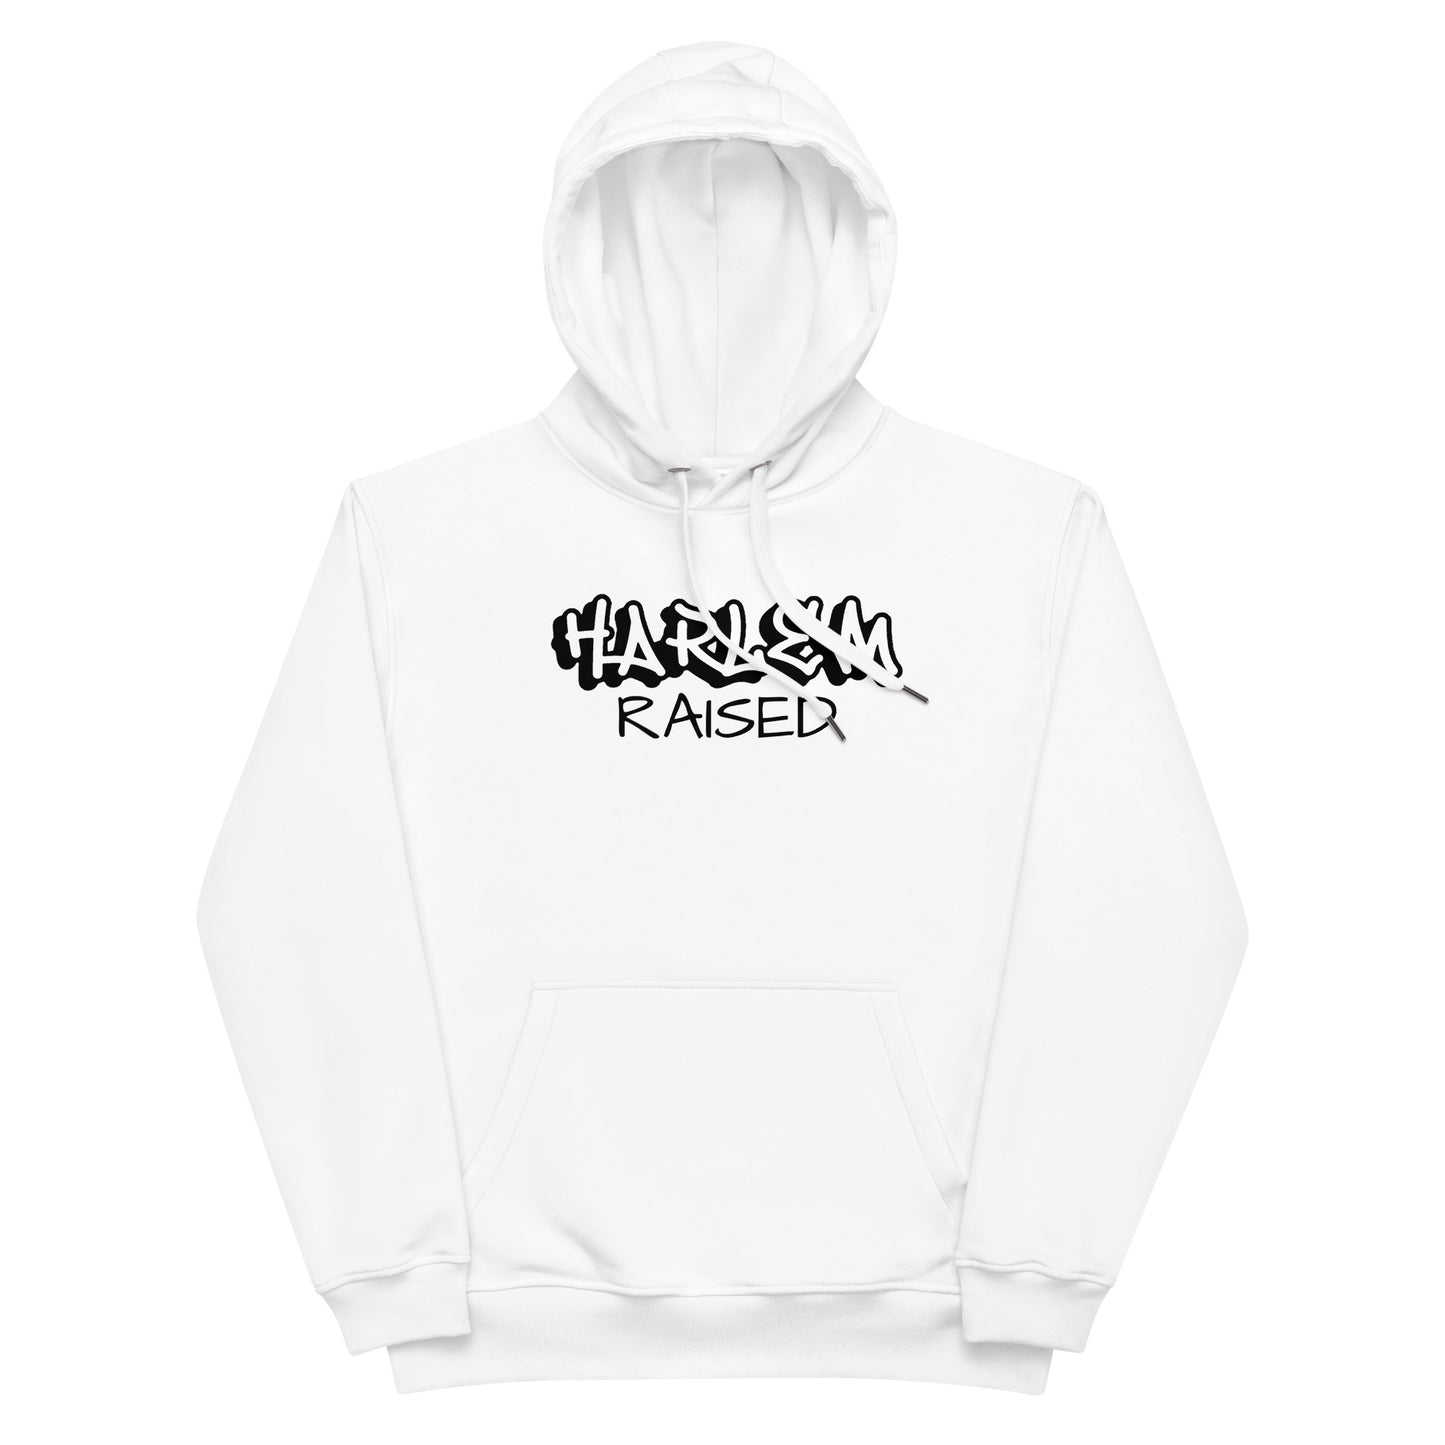 Jazrae all White Harlem Raised Premium eco hoodie